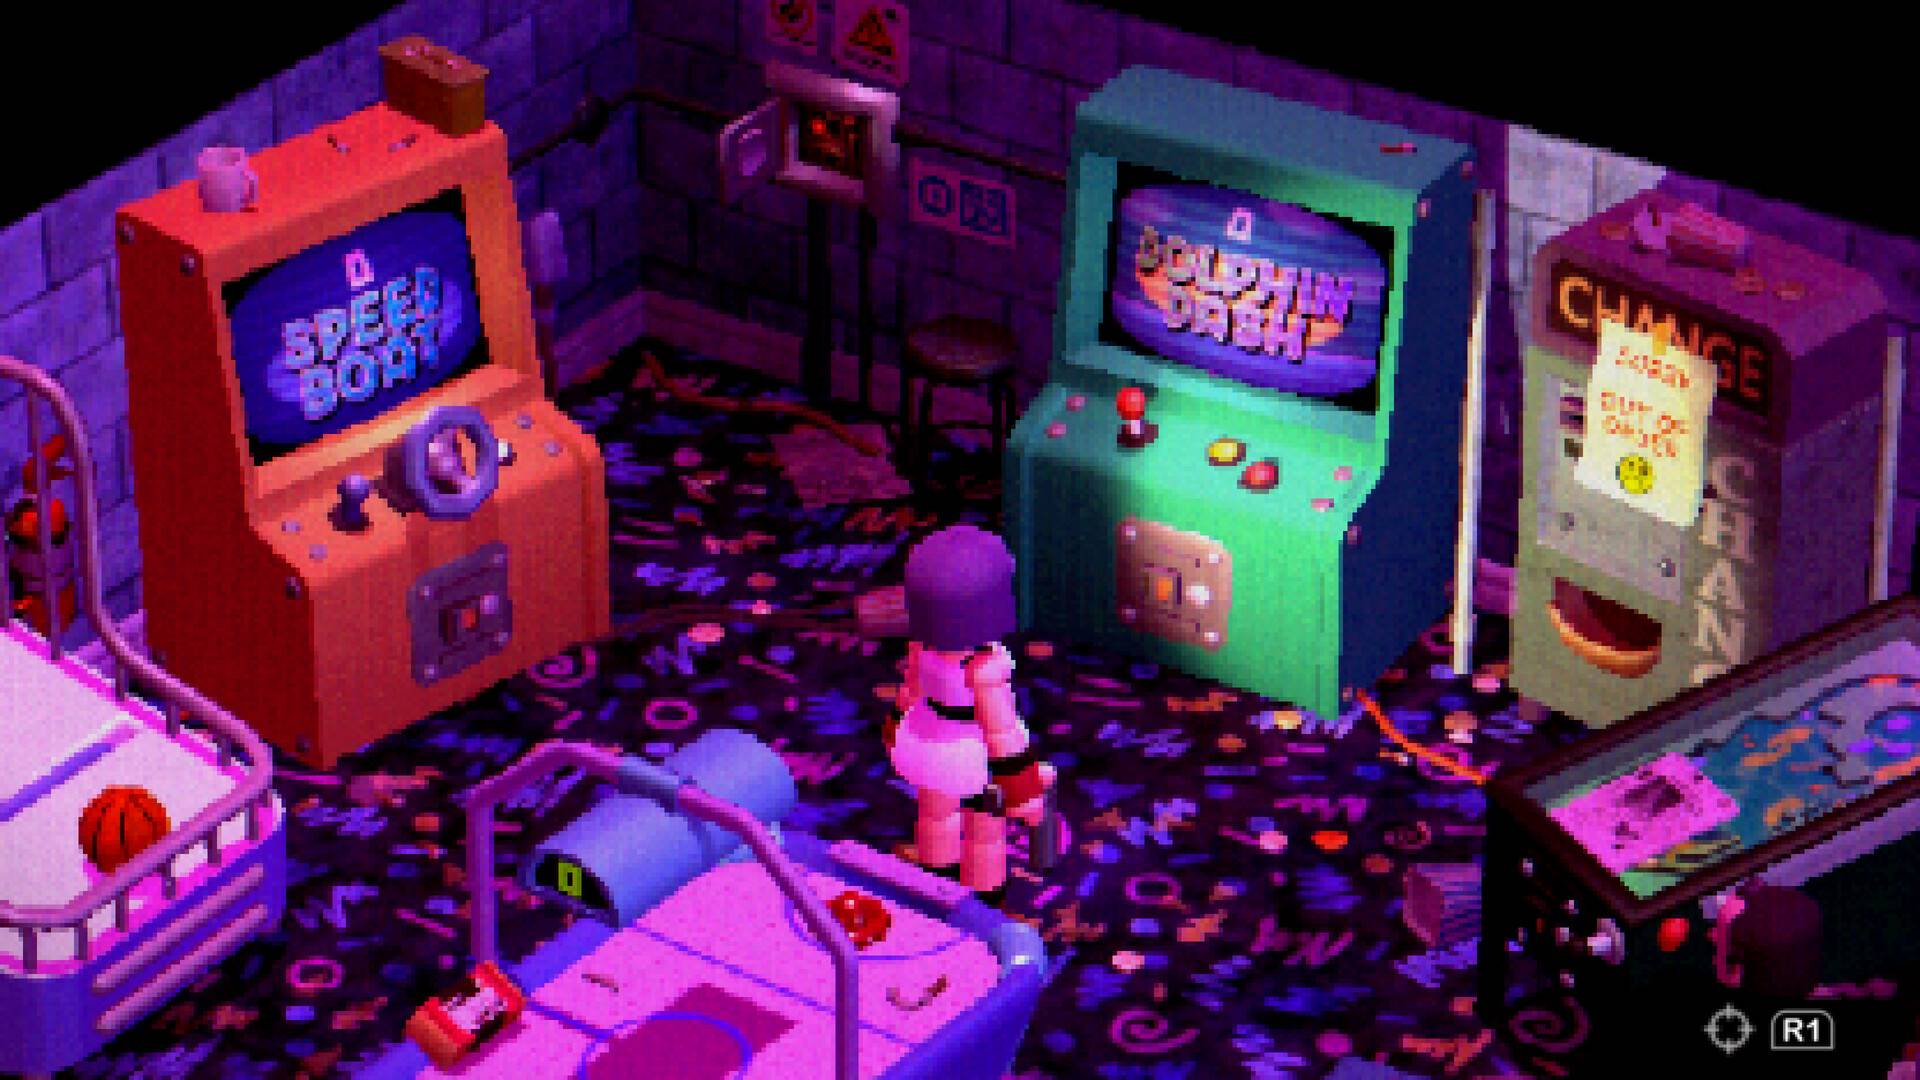 Eine blockige Figur steht in einer farbenfrohen Spielhalle